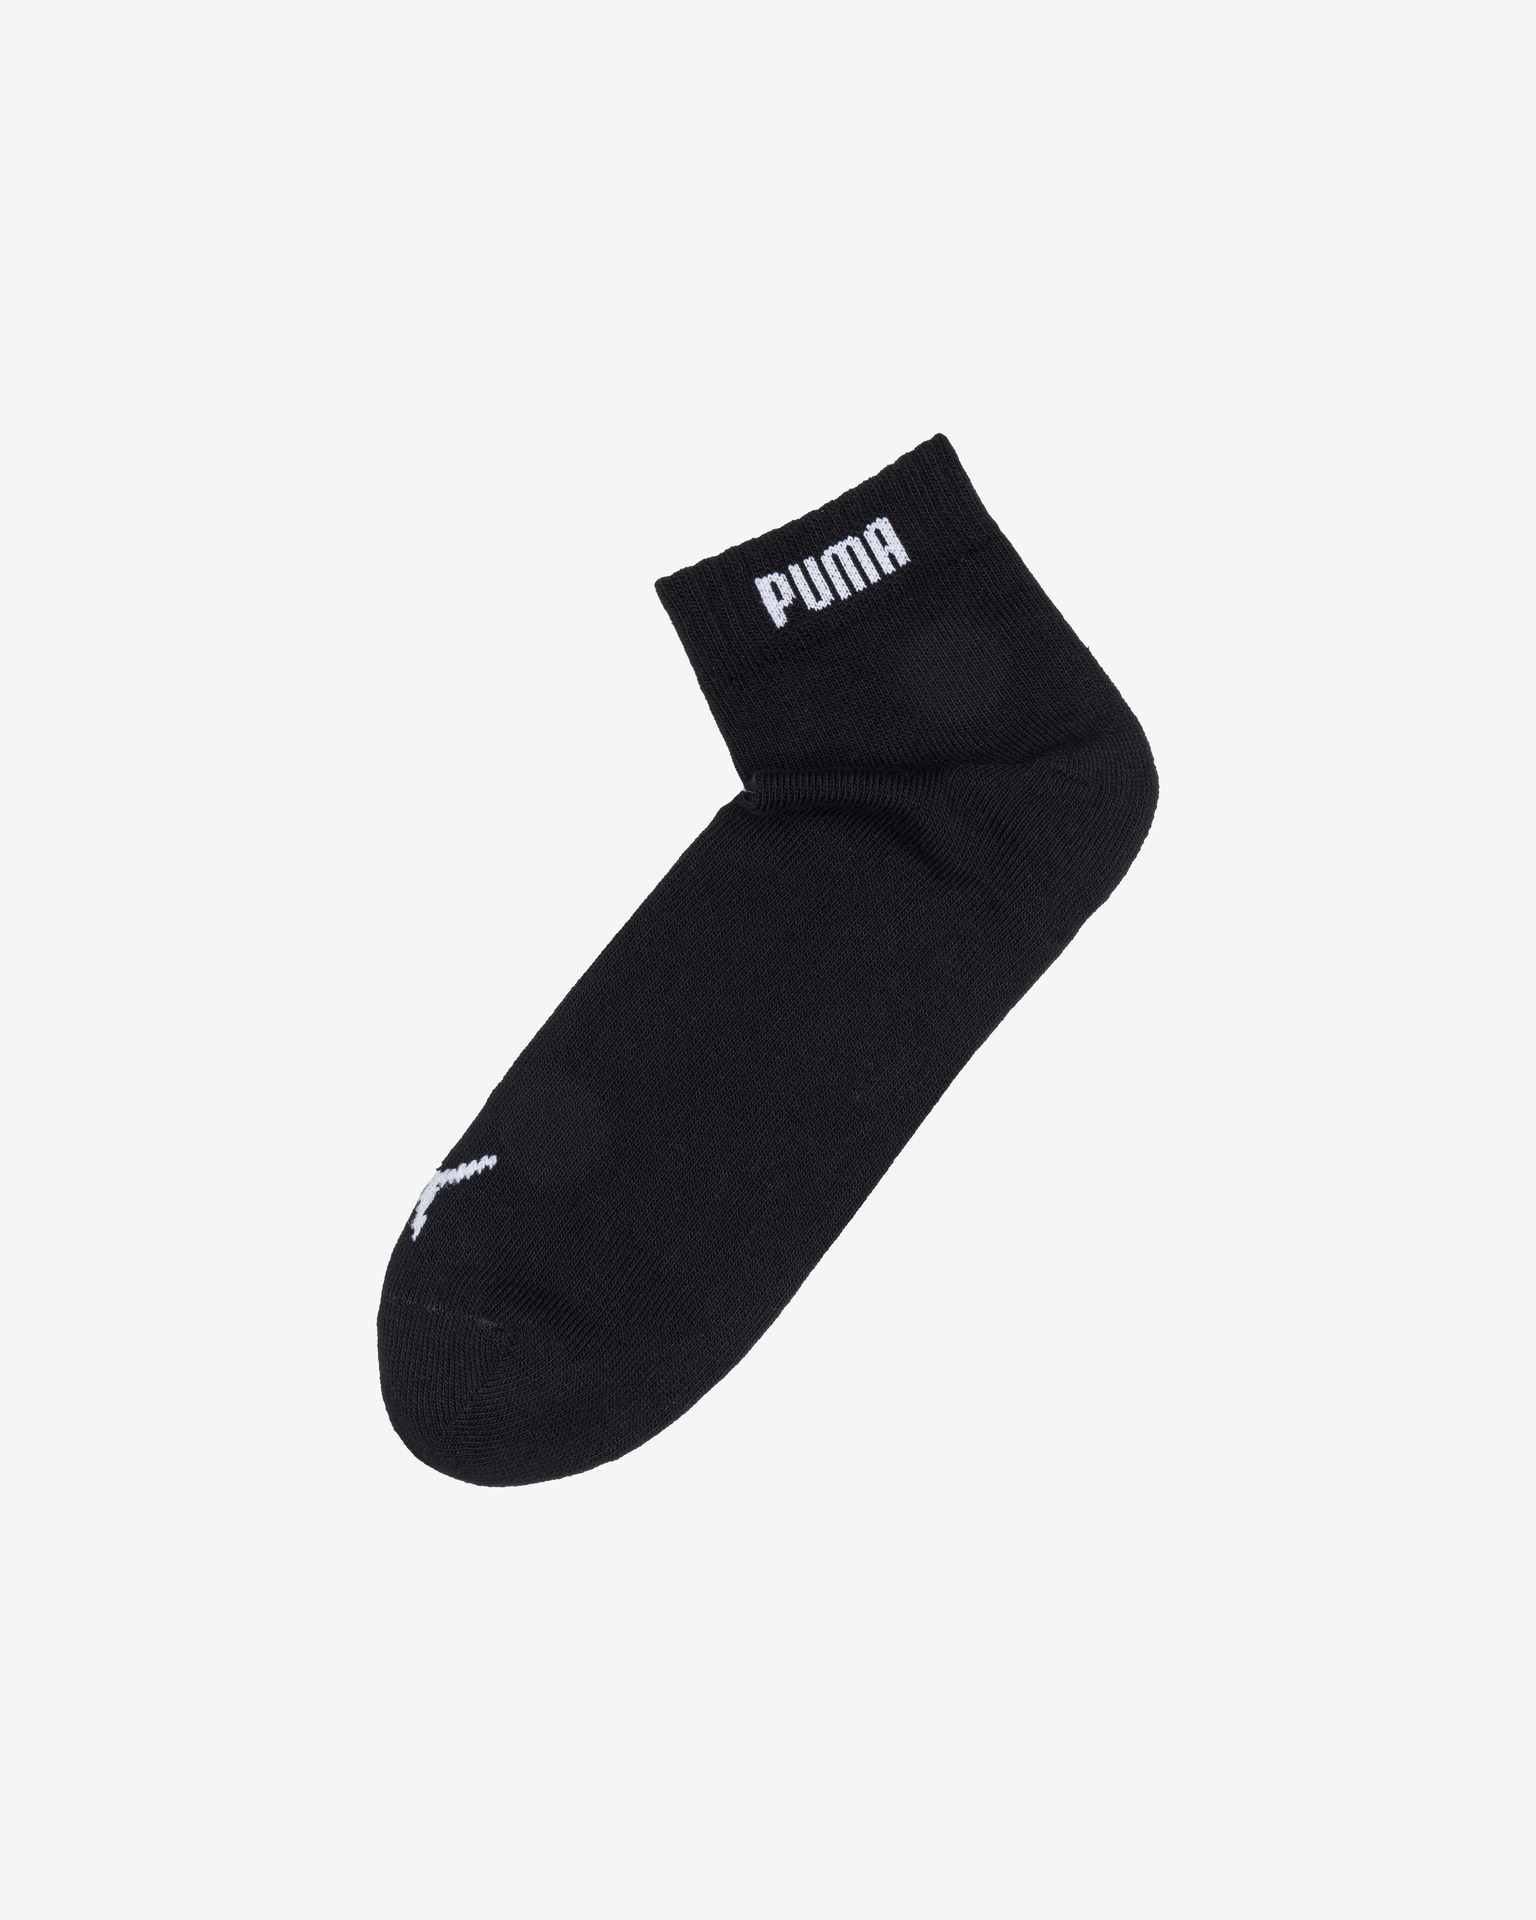 puma socks set of 3